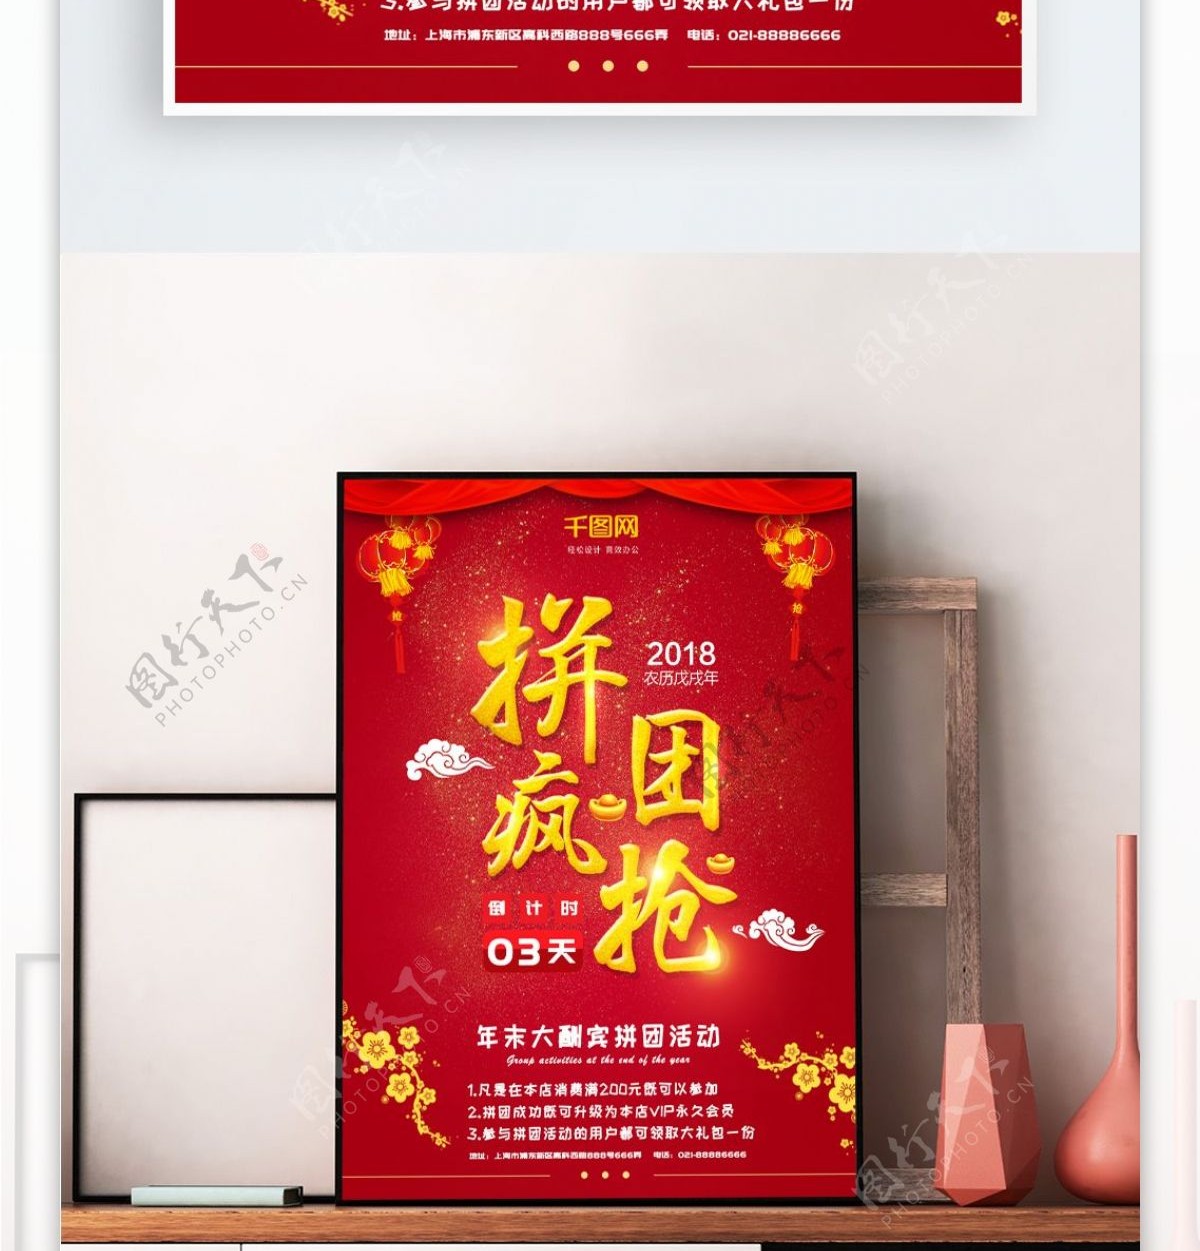 拼团疯抢红色灯笼元素中国风商场促销海报